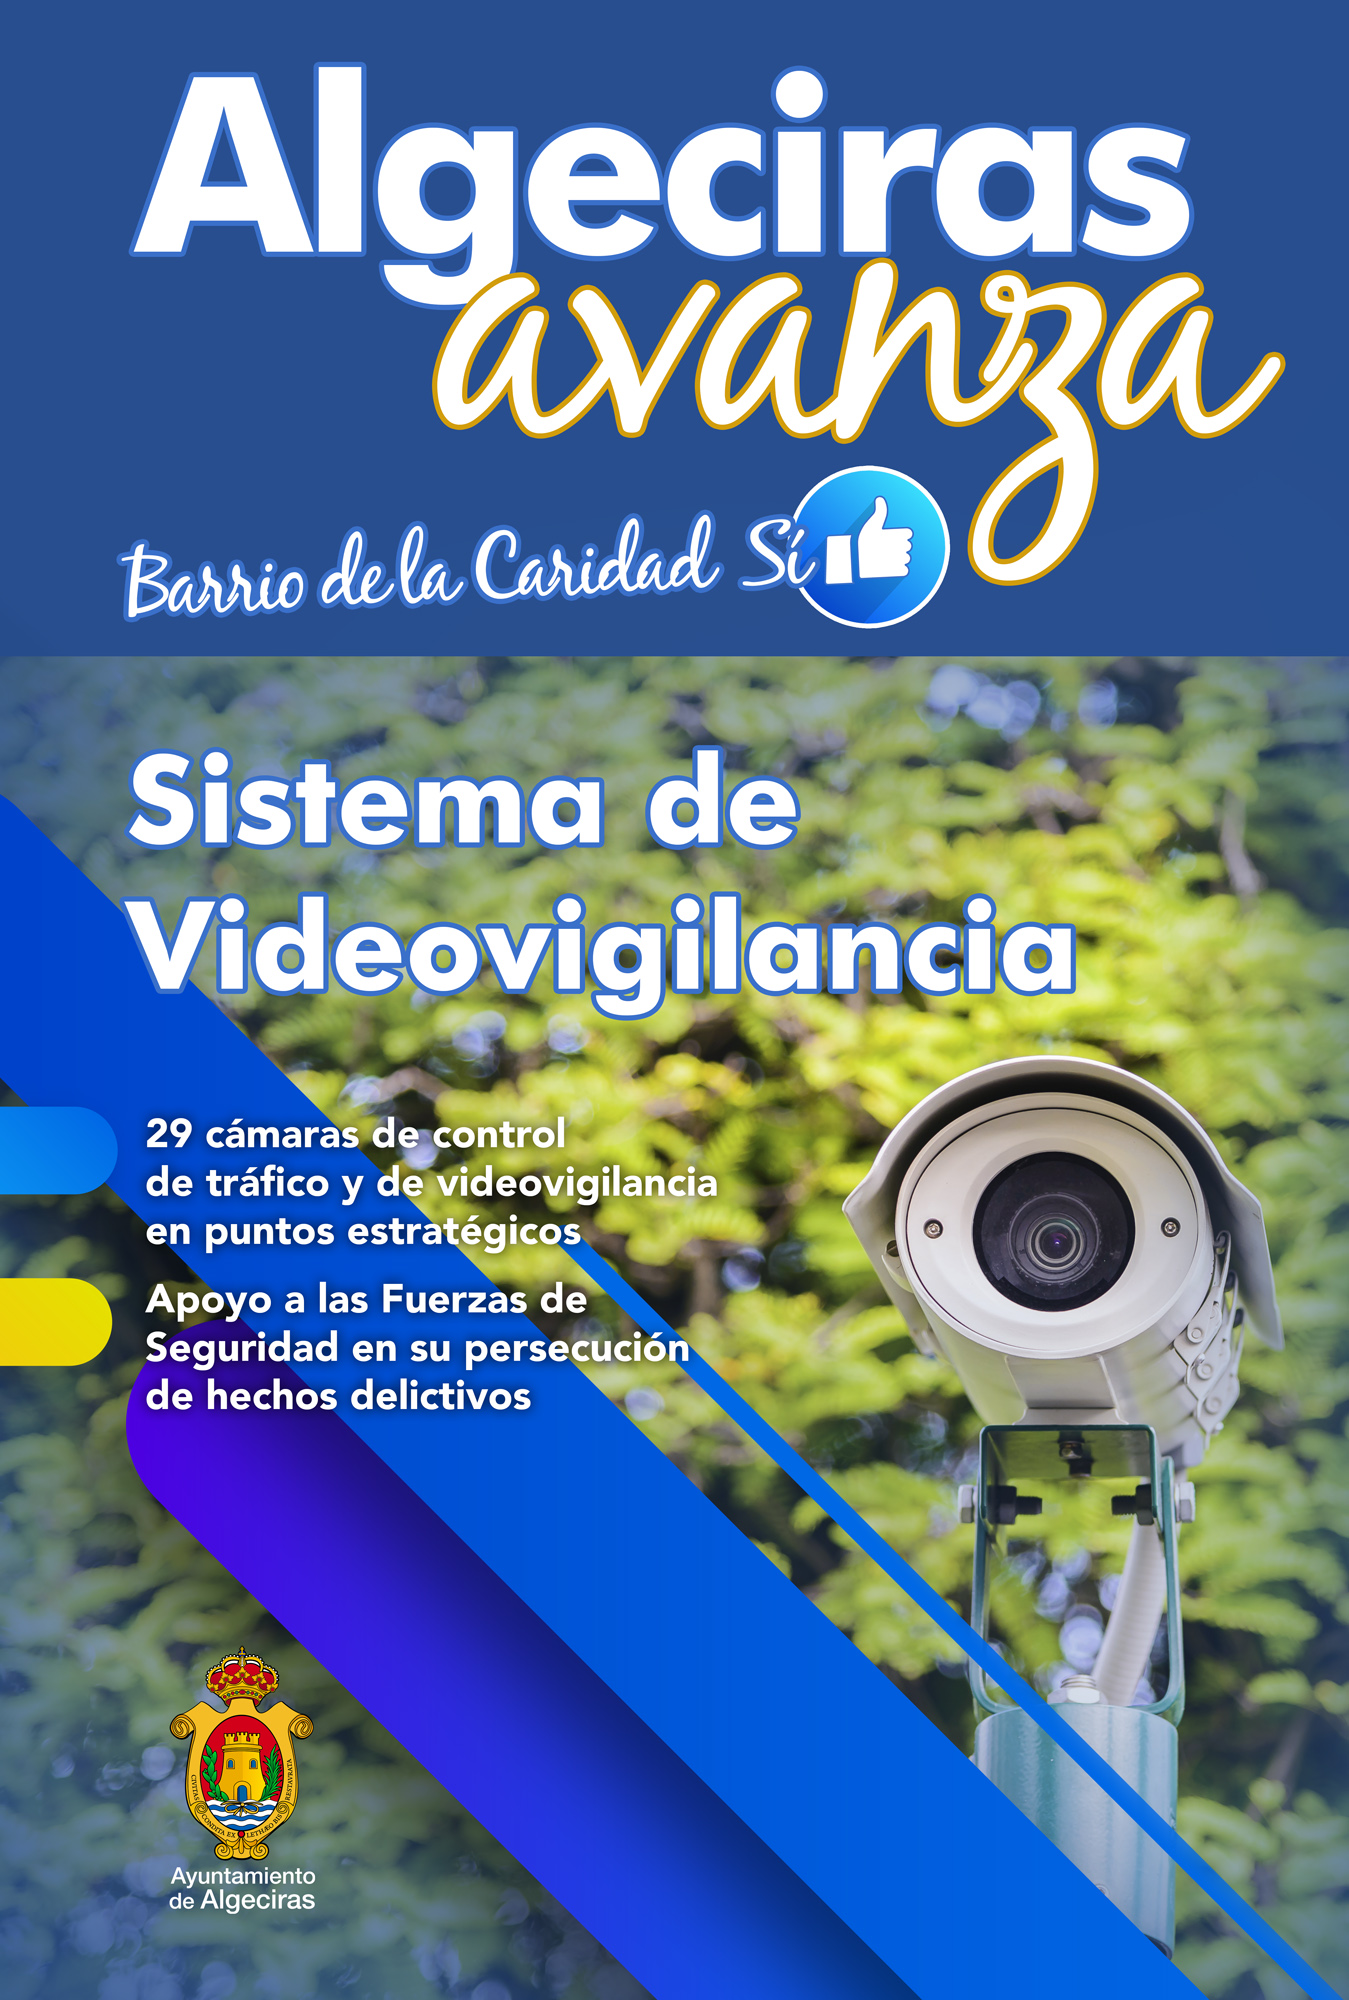 Algeciras avanza videovigilancia